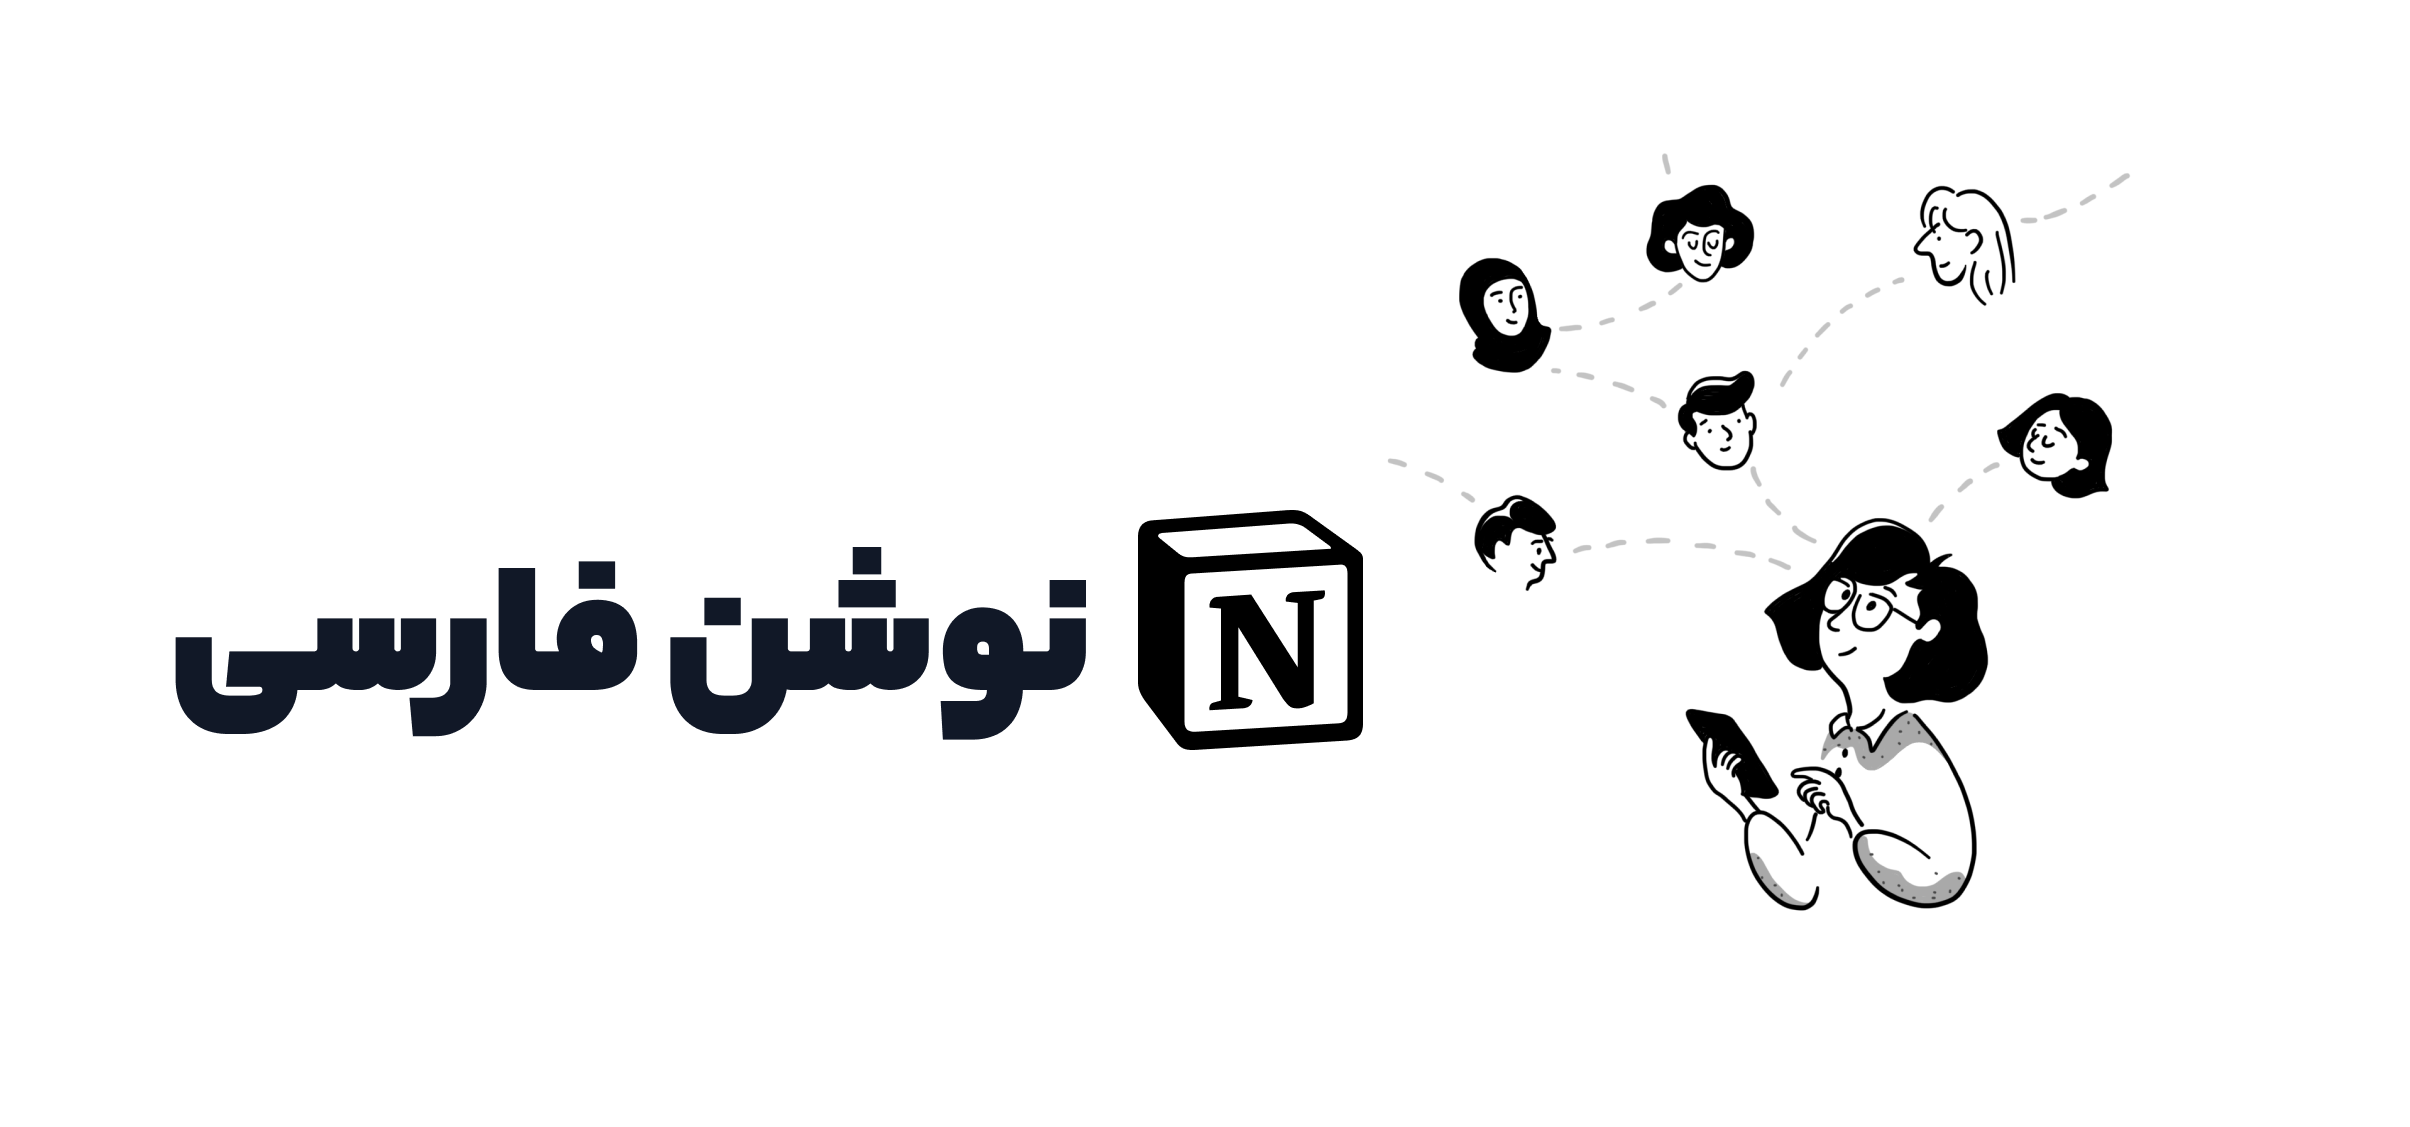 کامیونیتی Notion فارسی: پلی بین کاربران فارسی زبان در سراسر دنیا